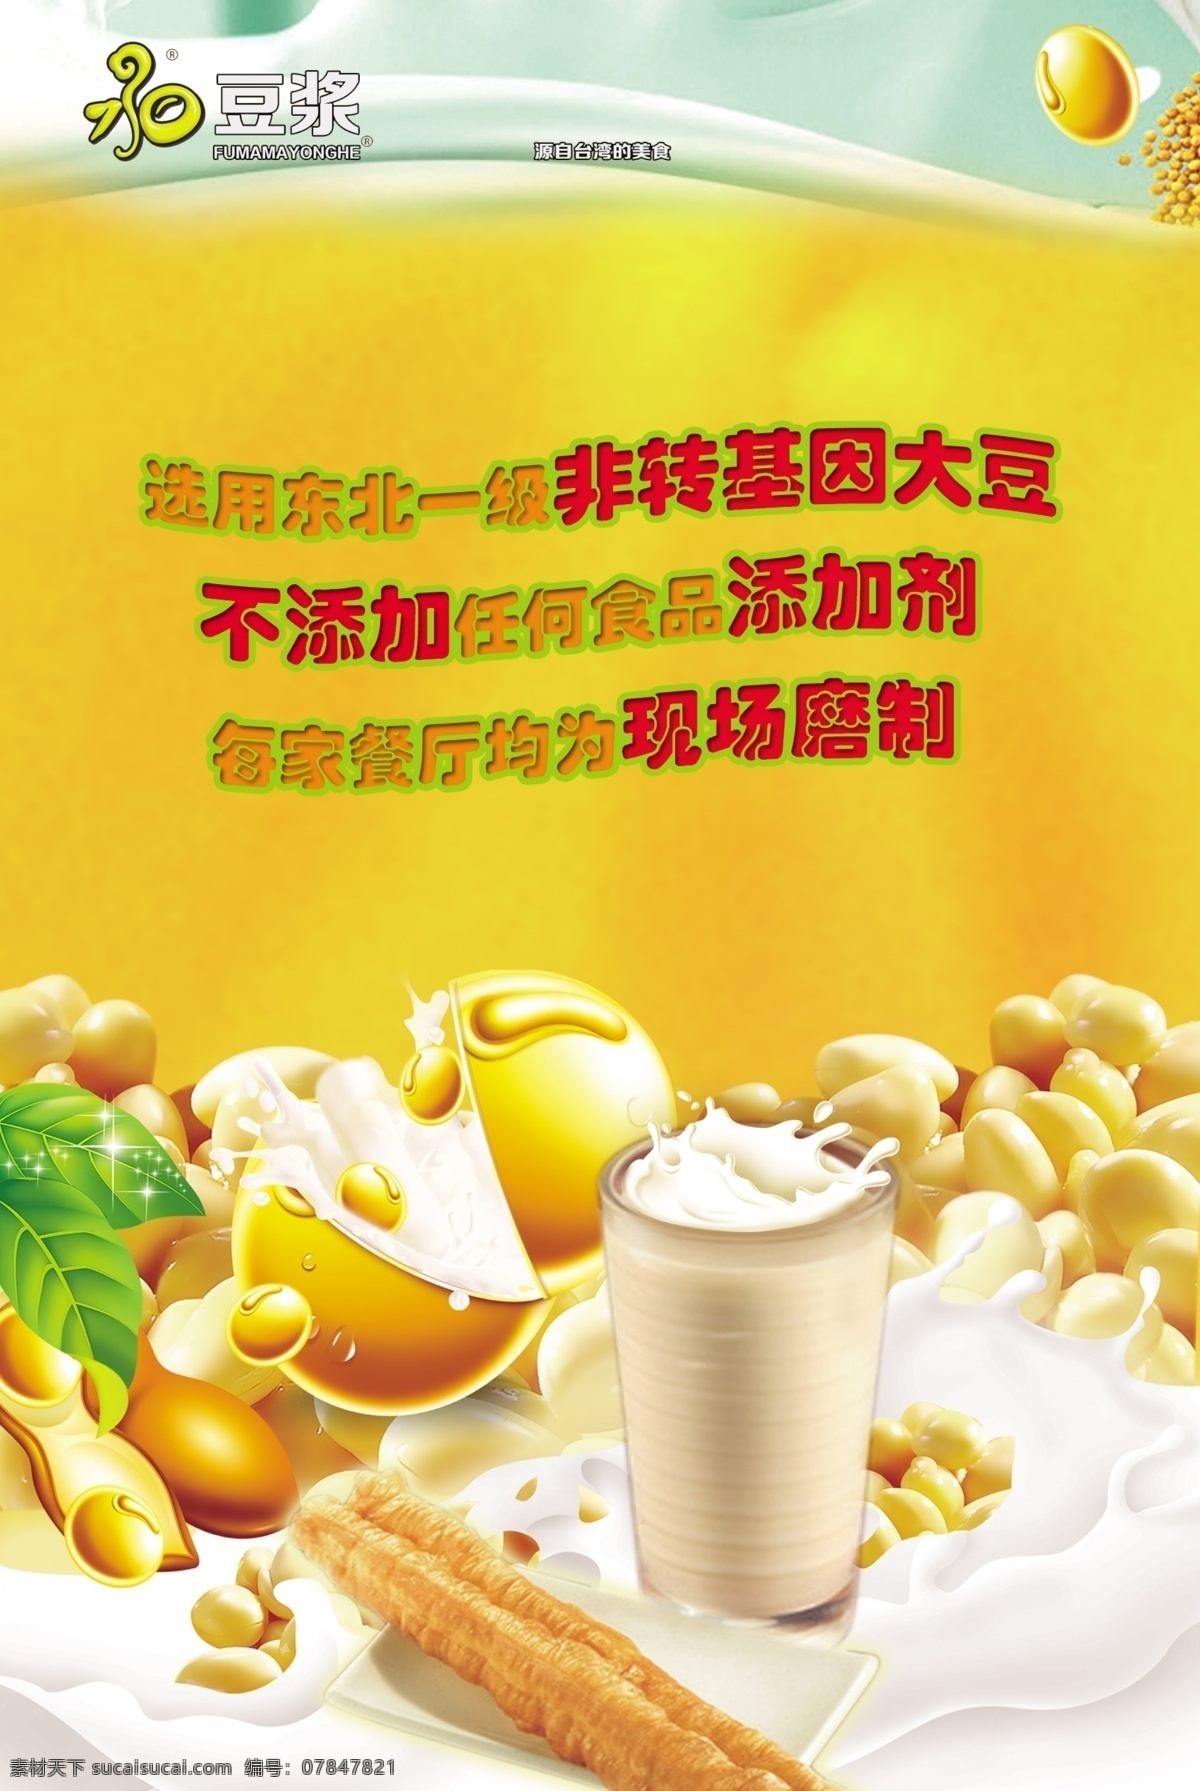 豆浆海报 永和豆浆 大豆 模板 海报 豆浆 台湾 永和 招牌 logo